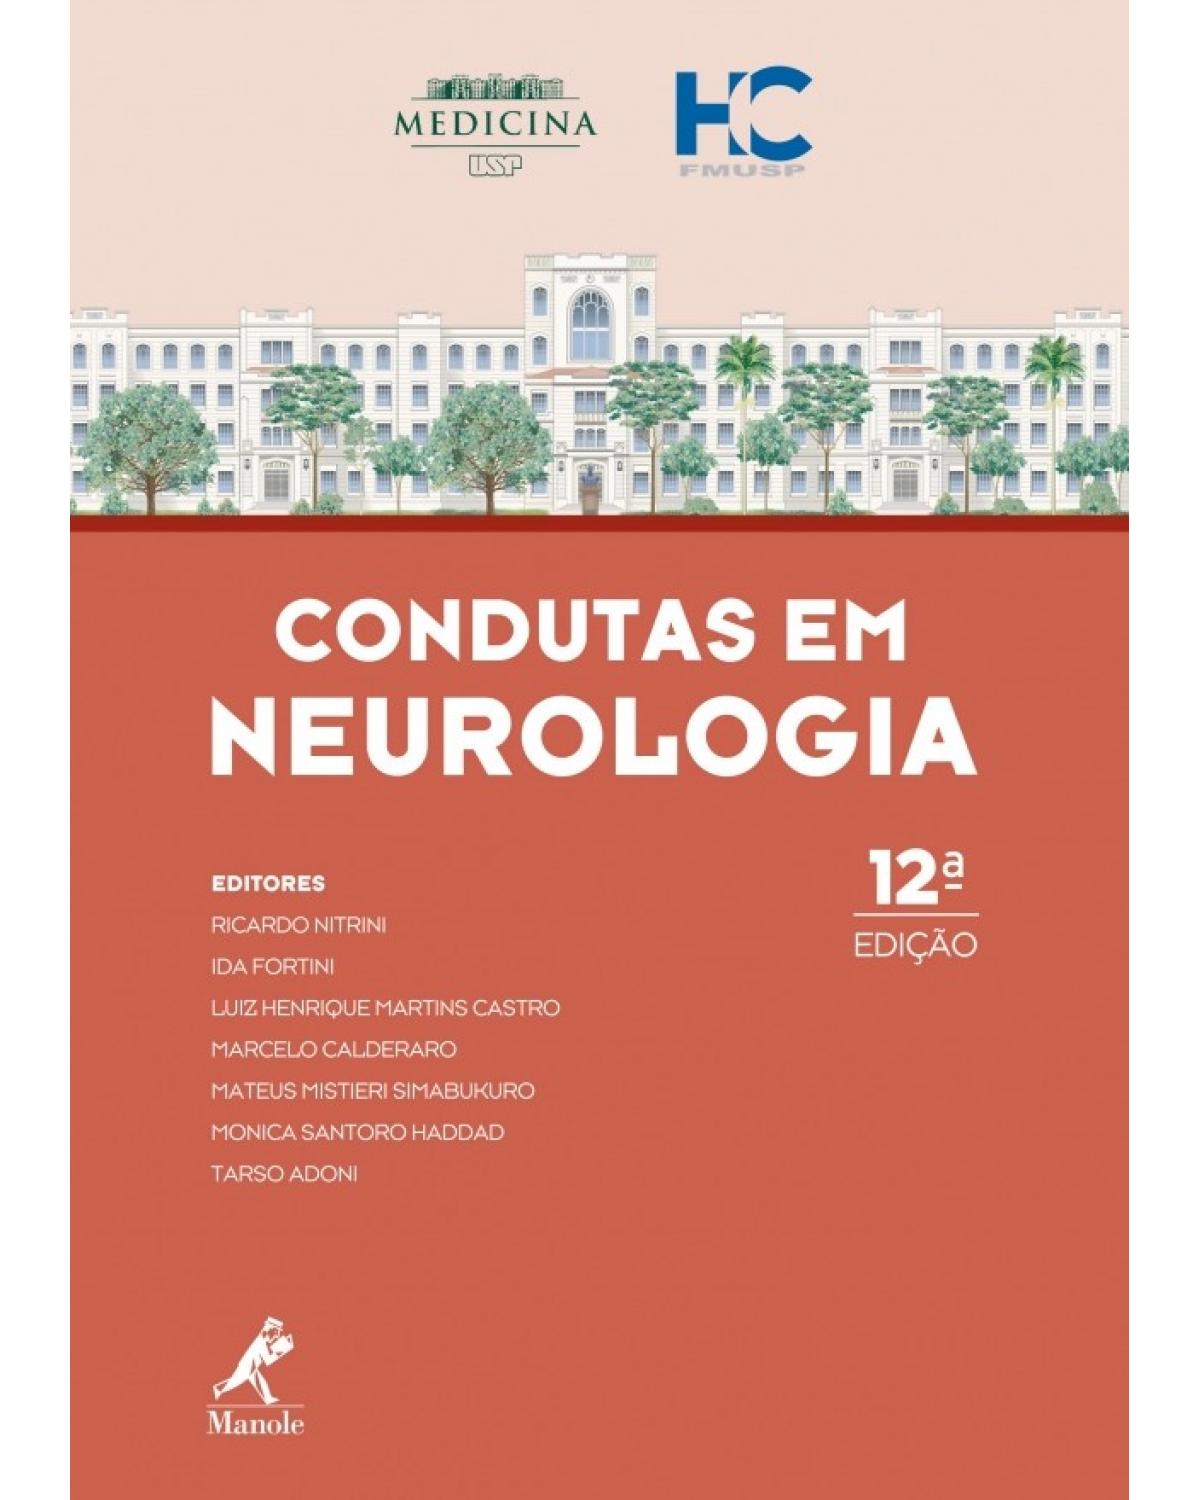 Condutas em neurologia - FMUSP HC - 12ª Edição | 2017